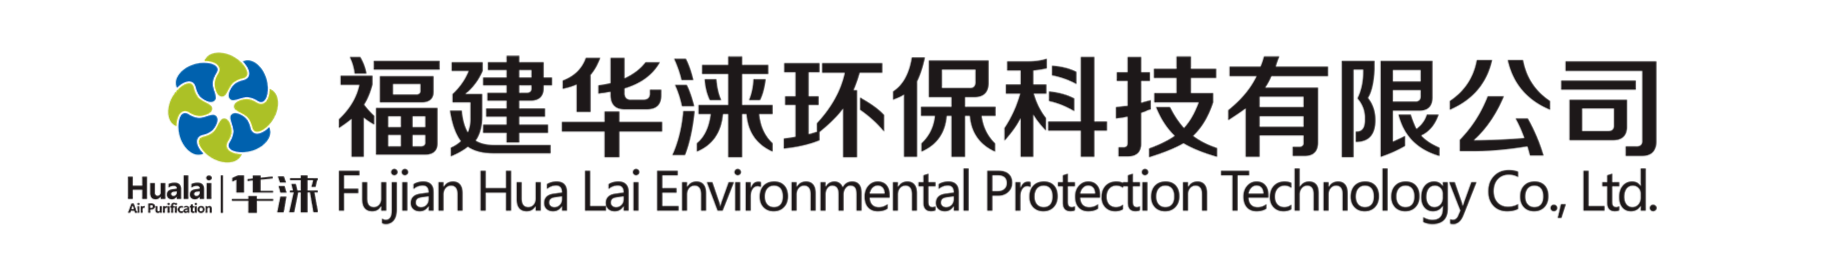 环保空调-福建华涞环保科技有限公司